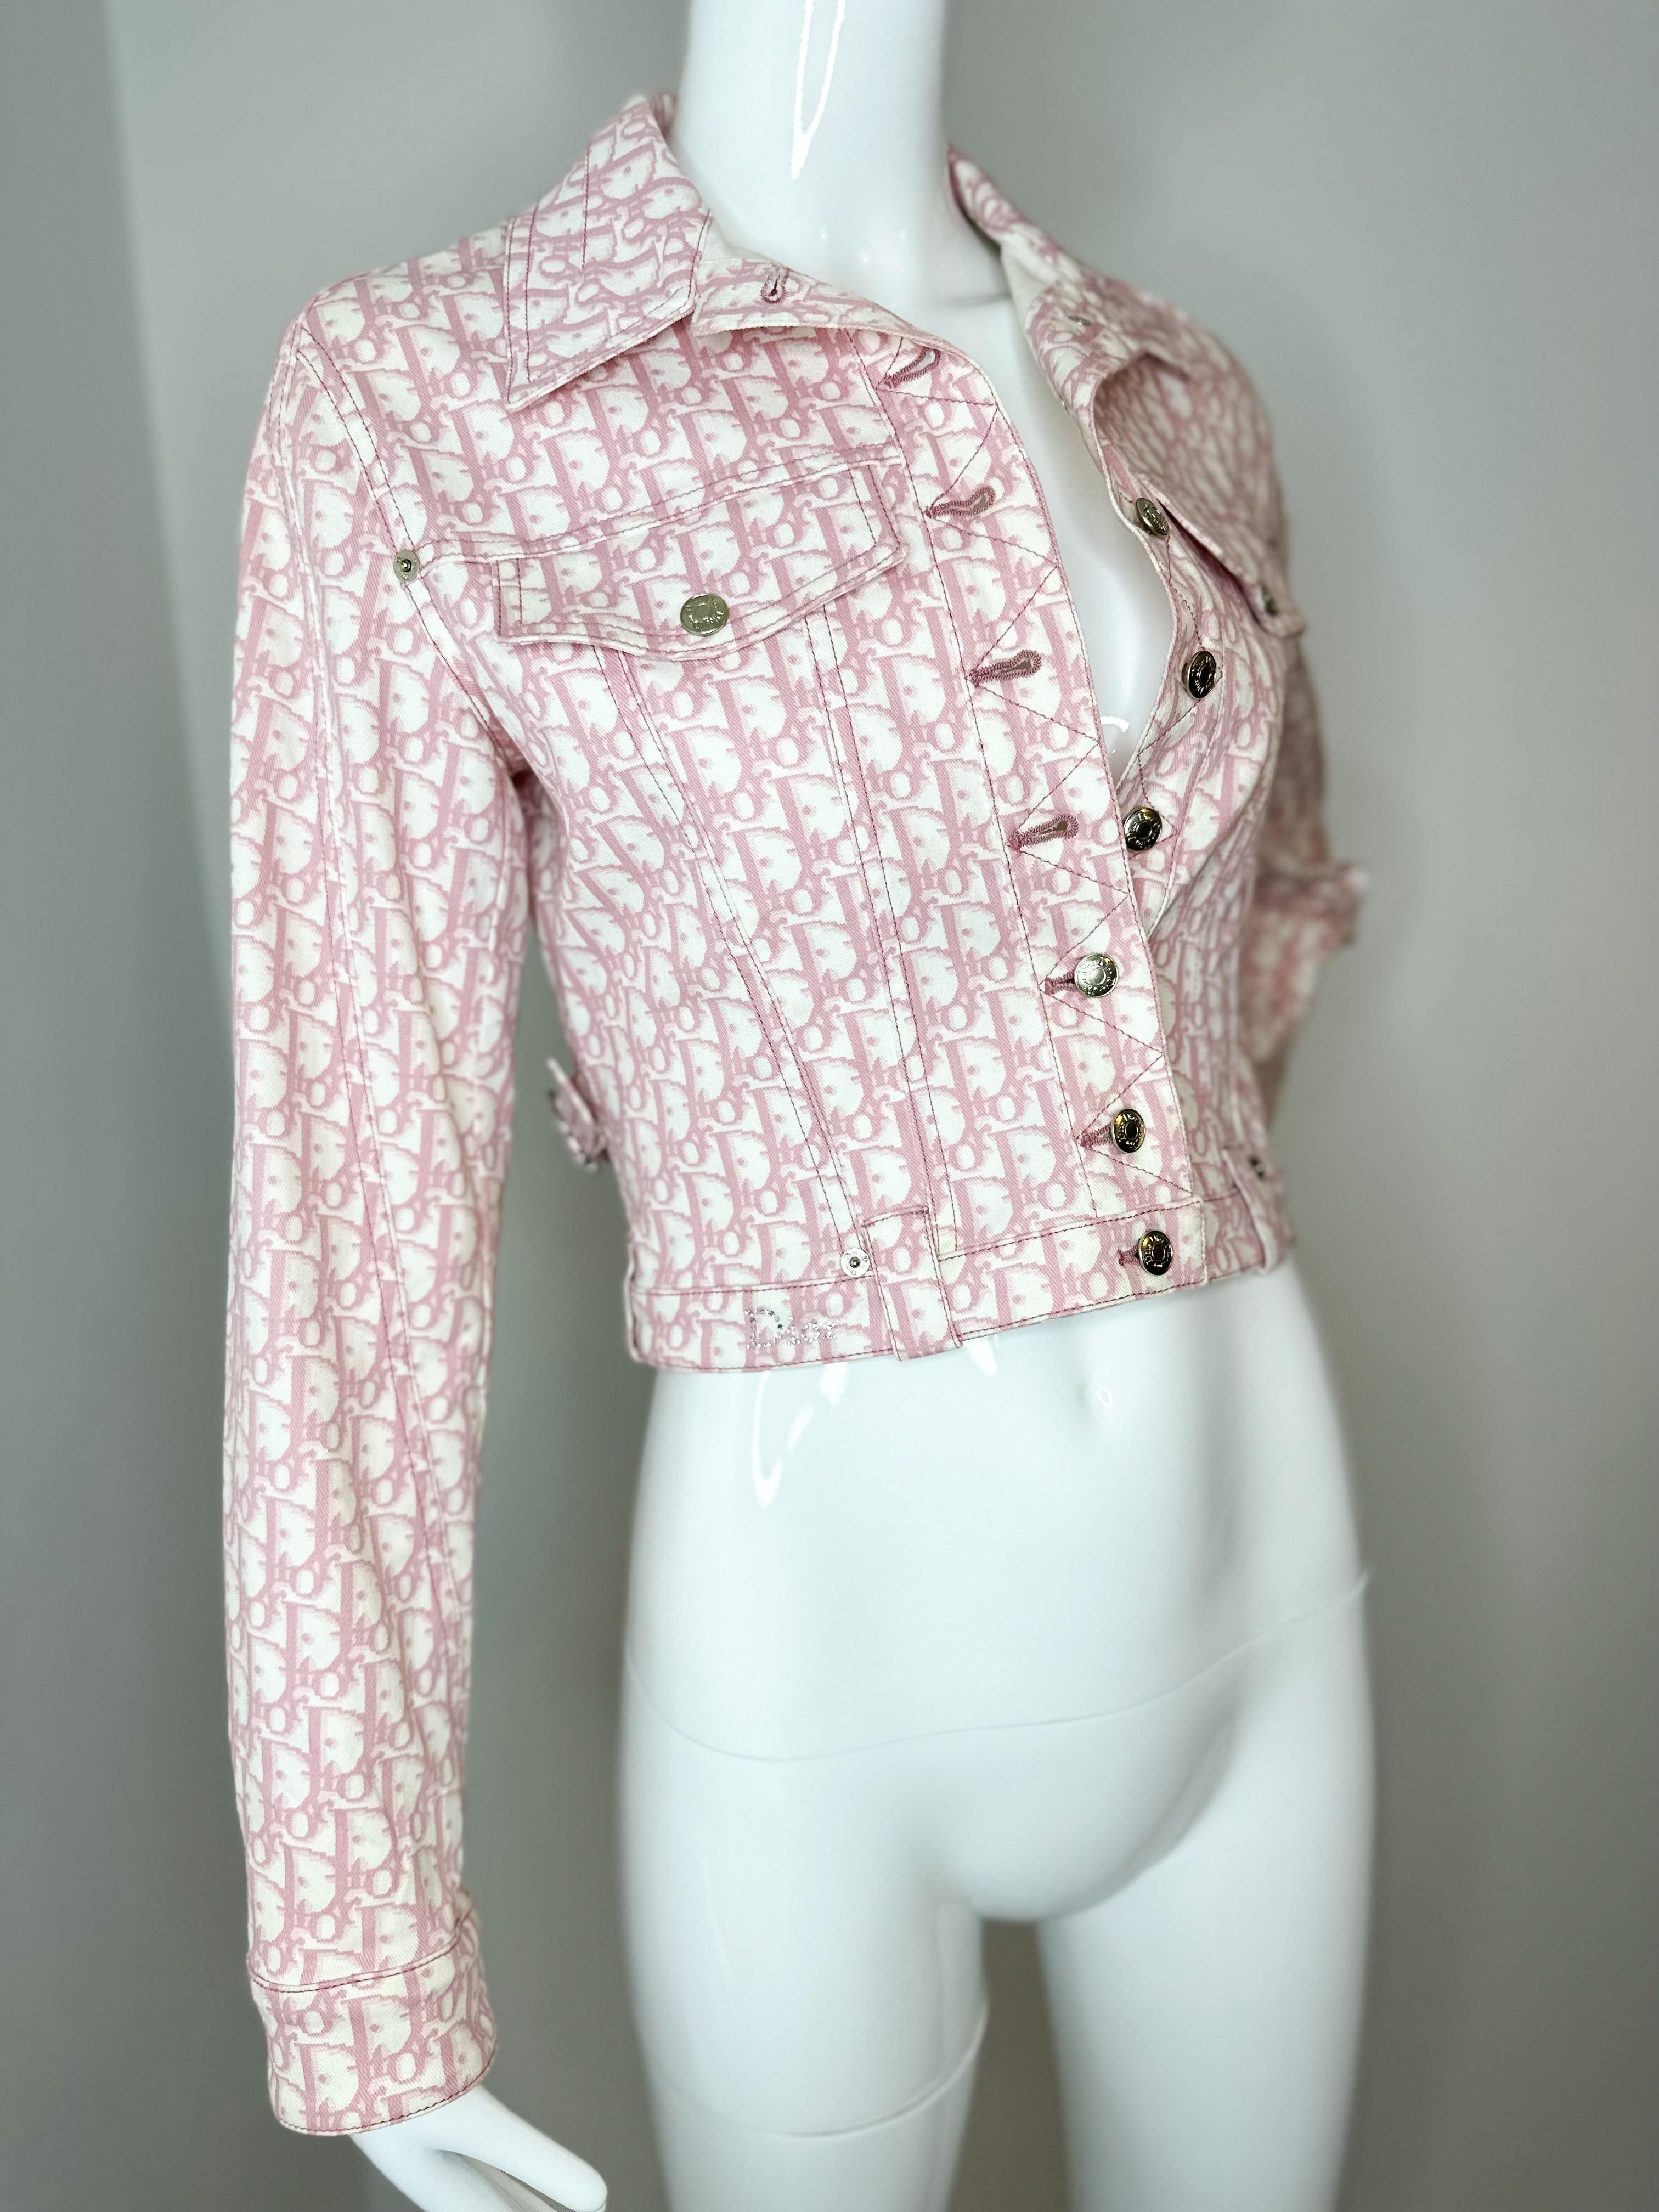 Christian Dior  by John Galliano 2004 Girly Collection rosa und weiße Jacke mit Monogramm  Jacke 

Größe Fr 36
US 4

Ausgezeichneter Zustand, keine Risse, Flecken oder Gerüche. Obwohl es ein Vintage ist, wurde es nur einmal getragen und ist in